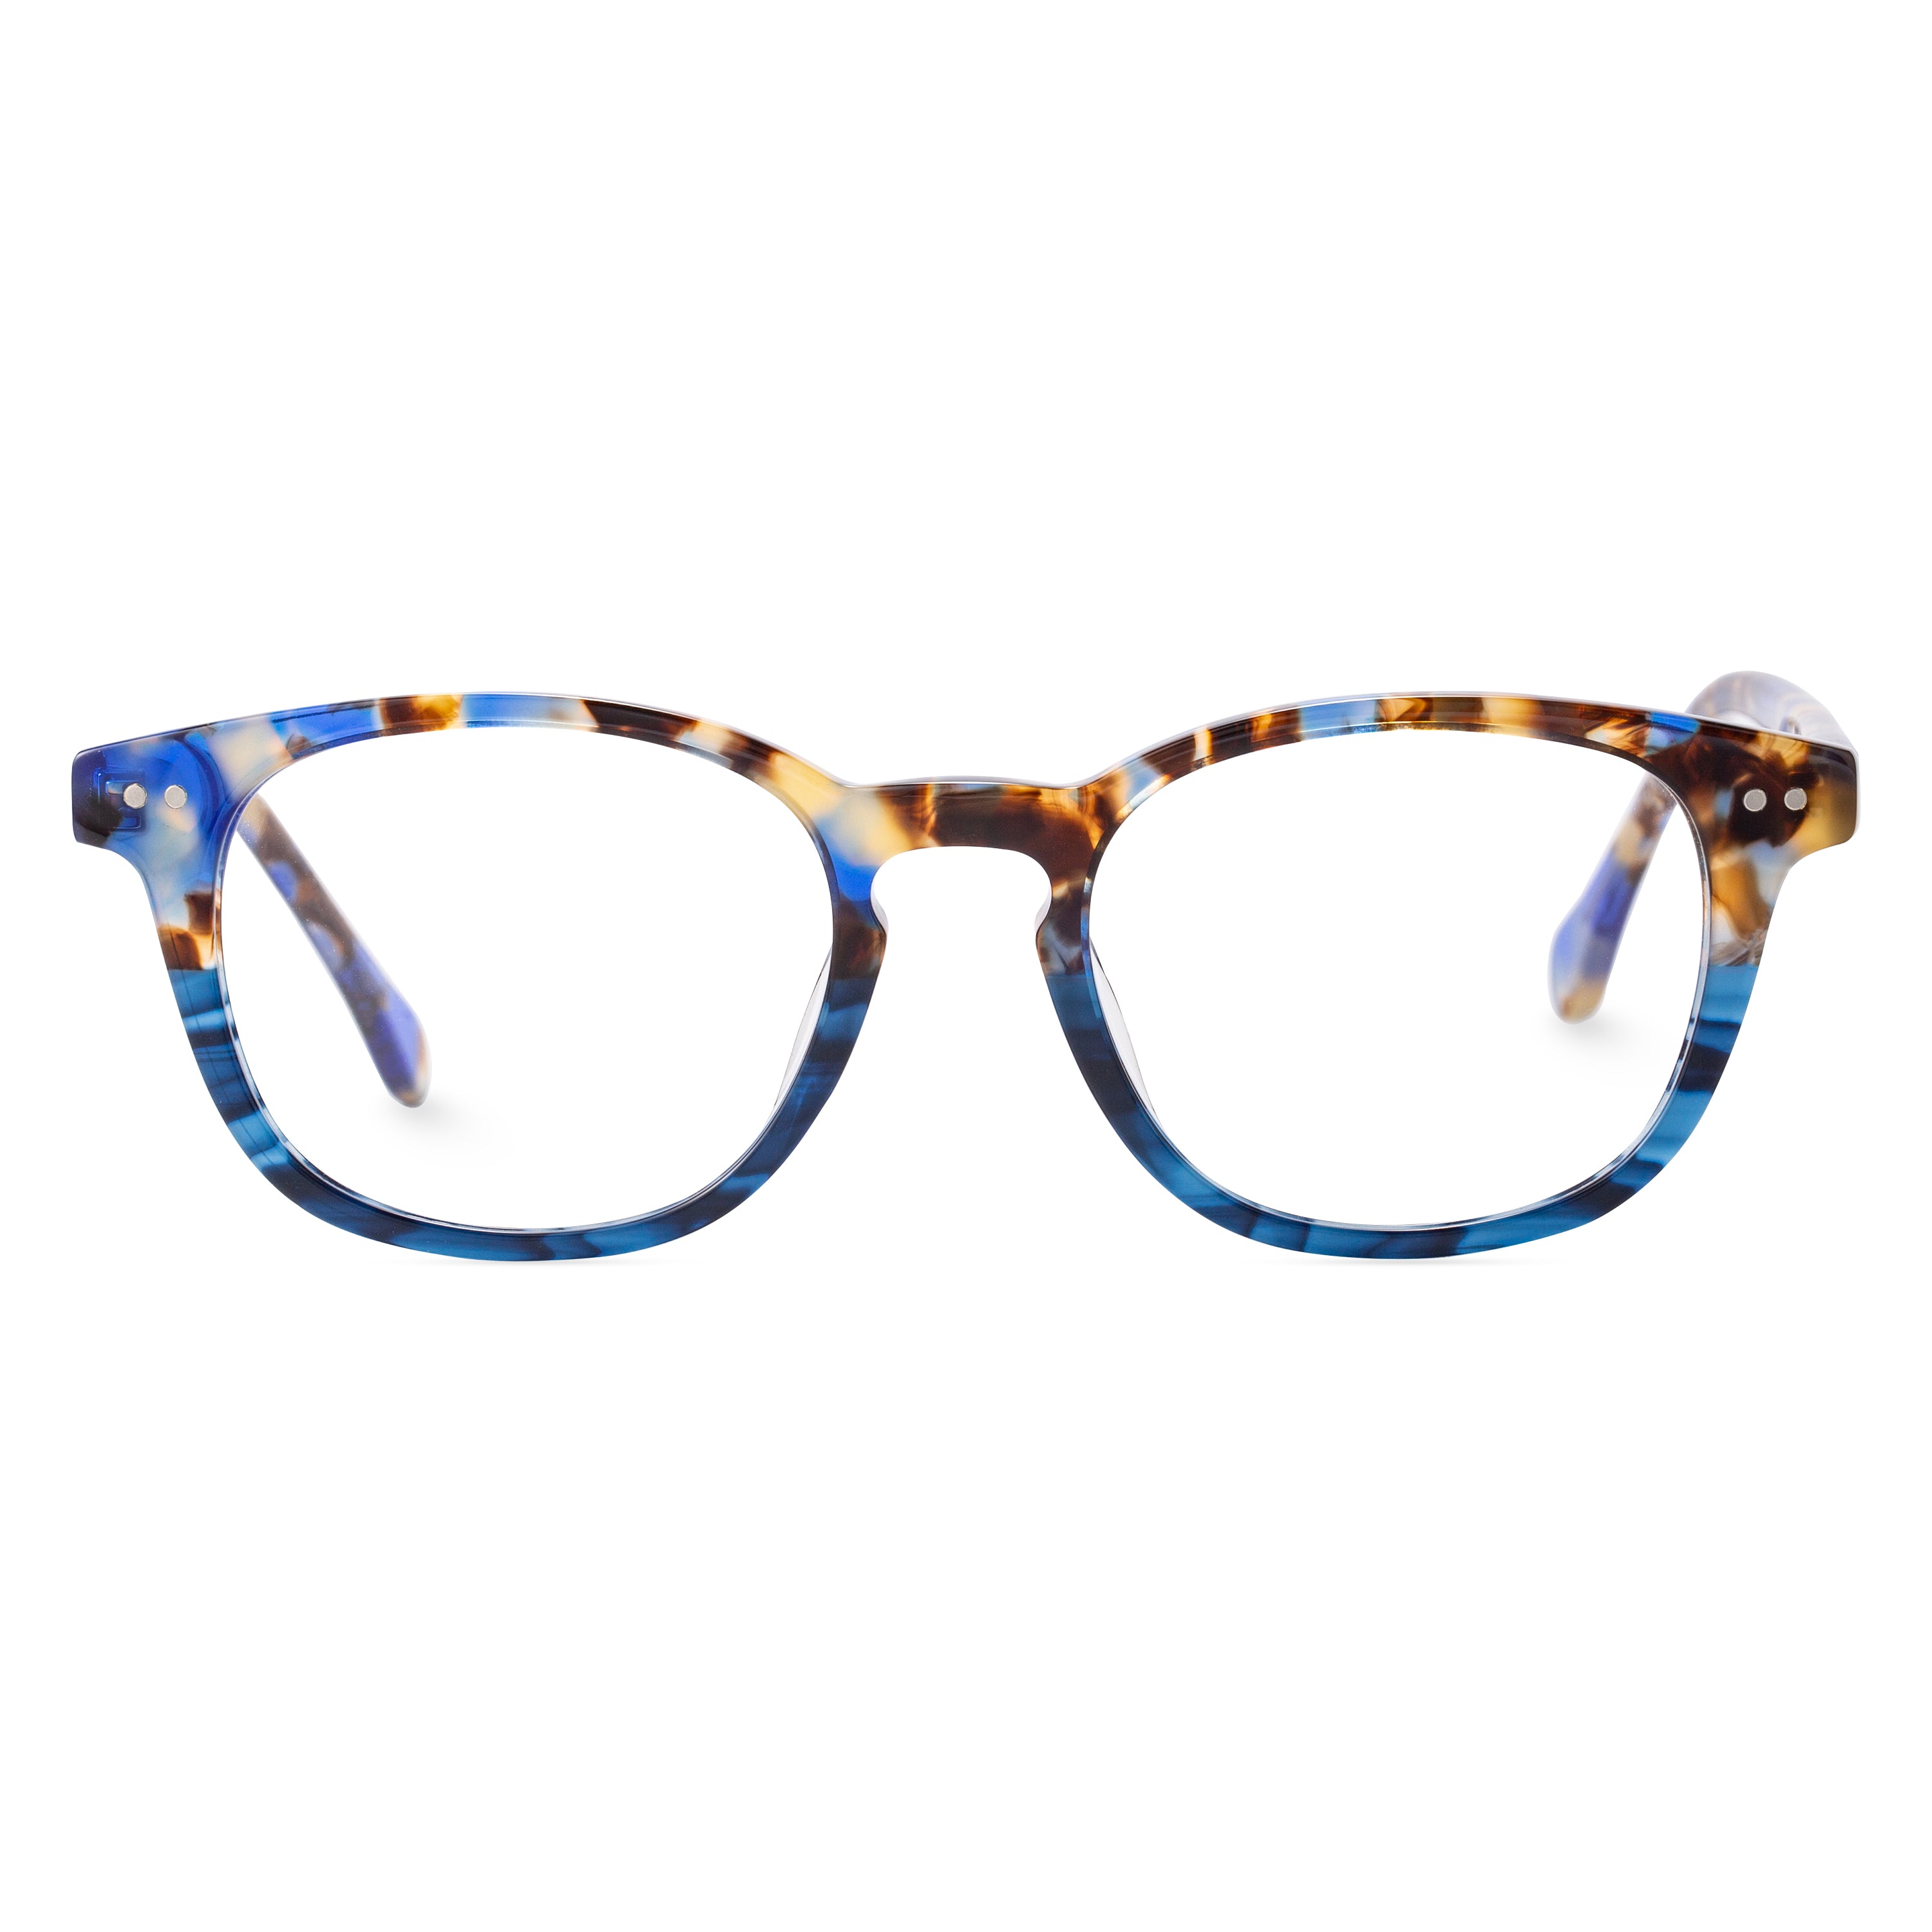 ELKLOOK Plastic Blue Tortoiseshell Round Prescription Glasses Frames ...